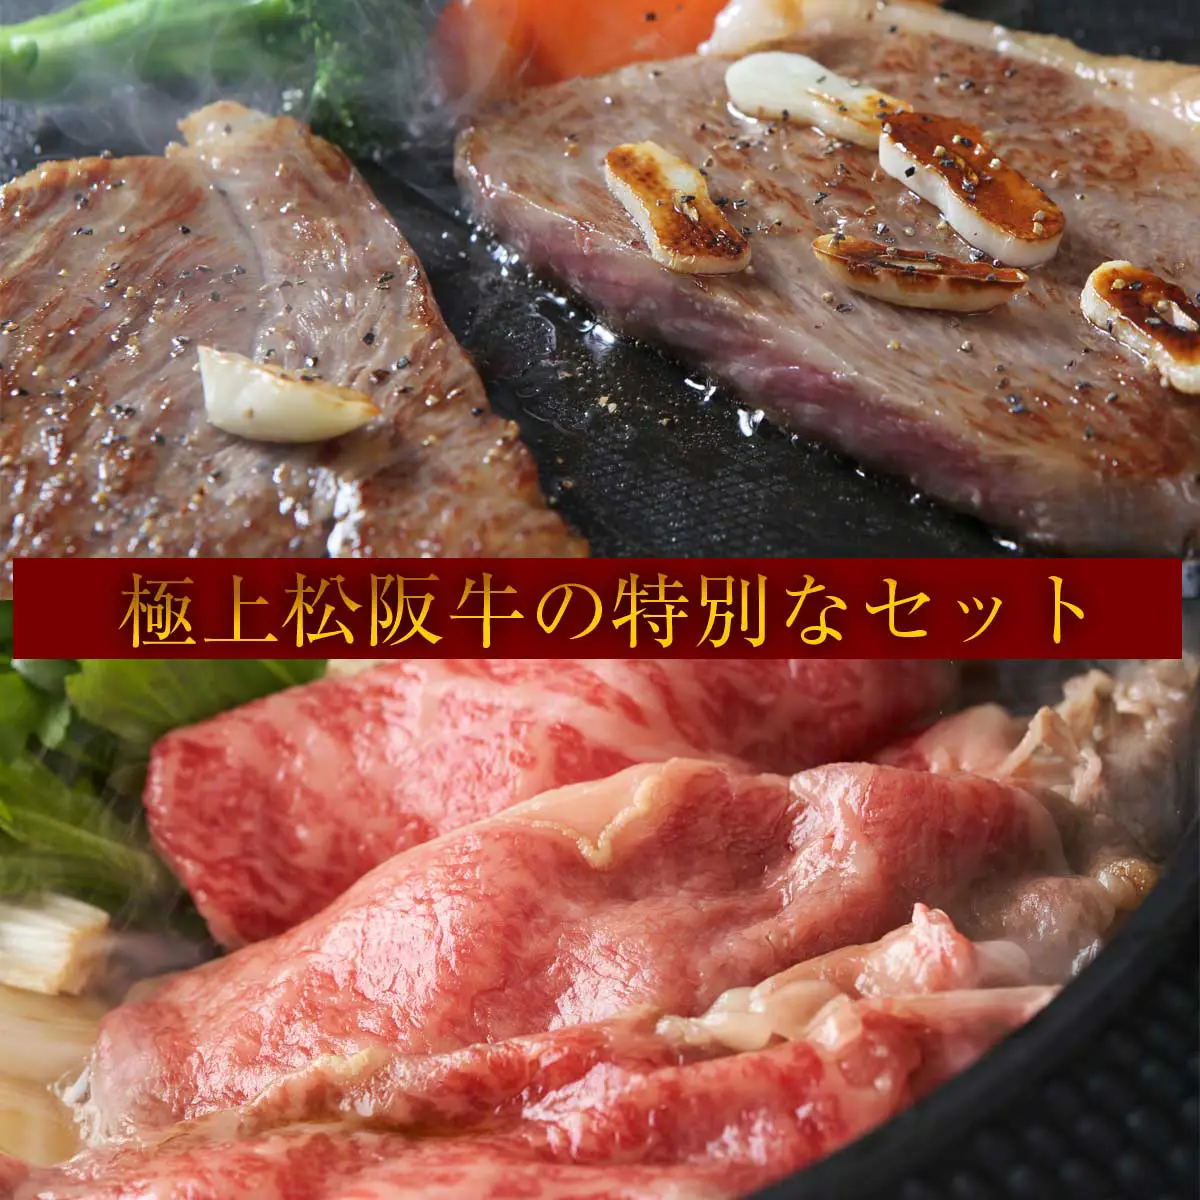 松阪牛ステーキ&すき焼き特別セット